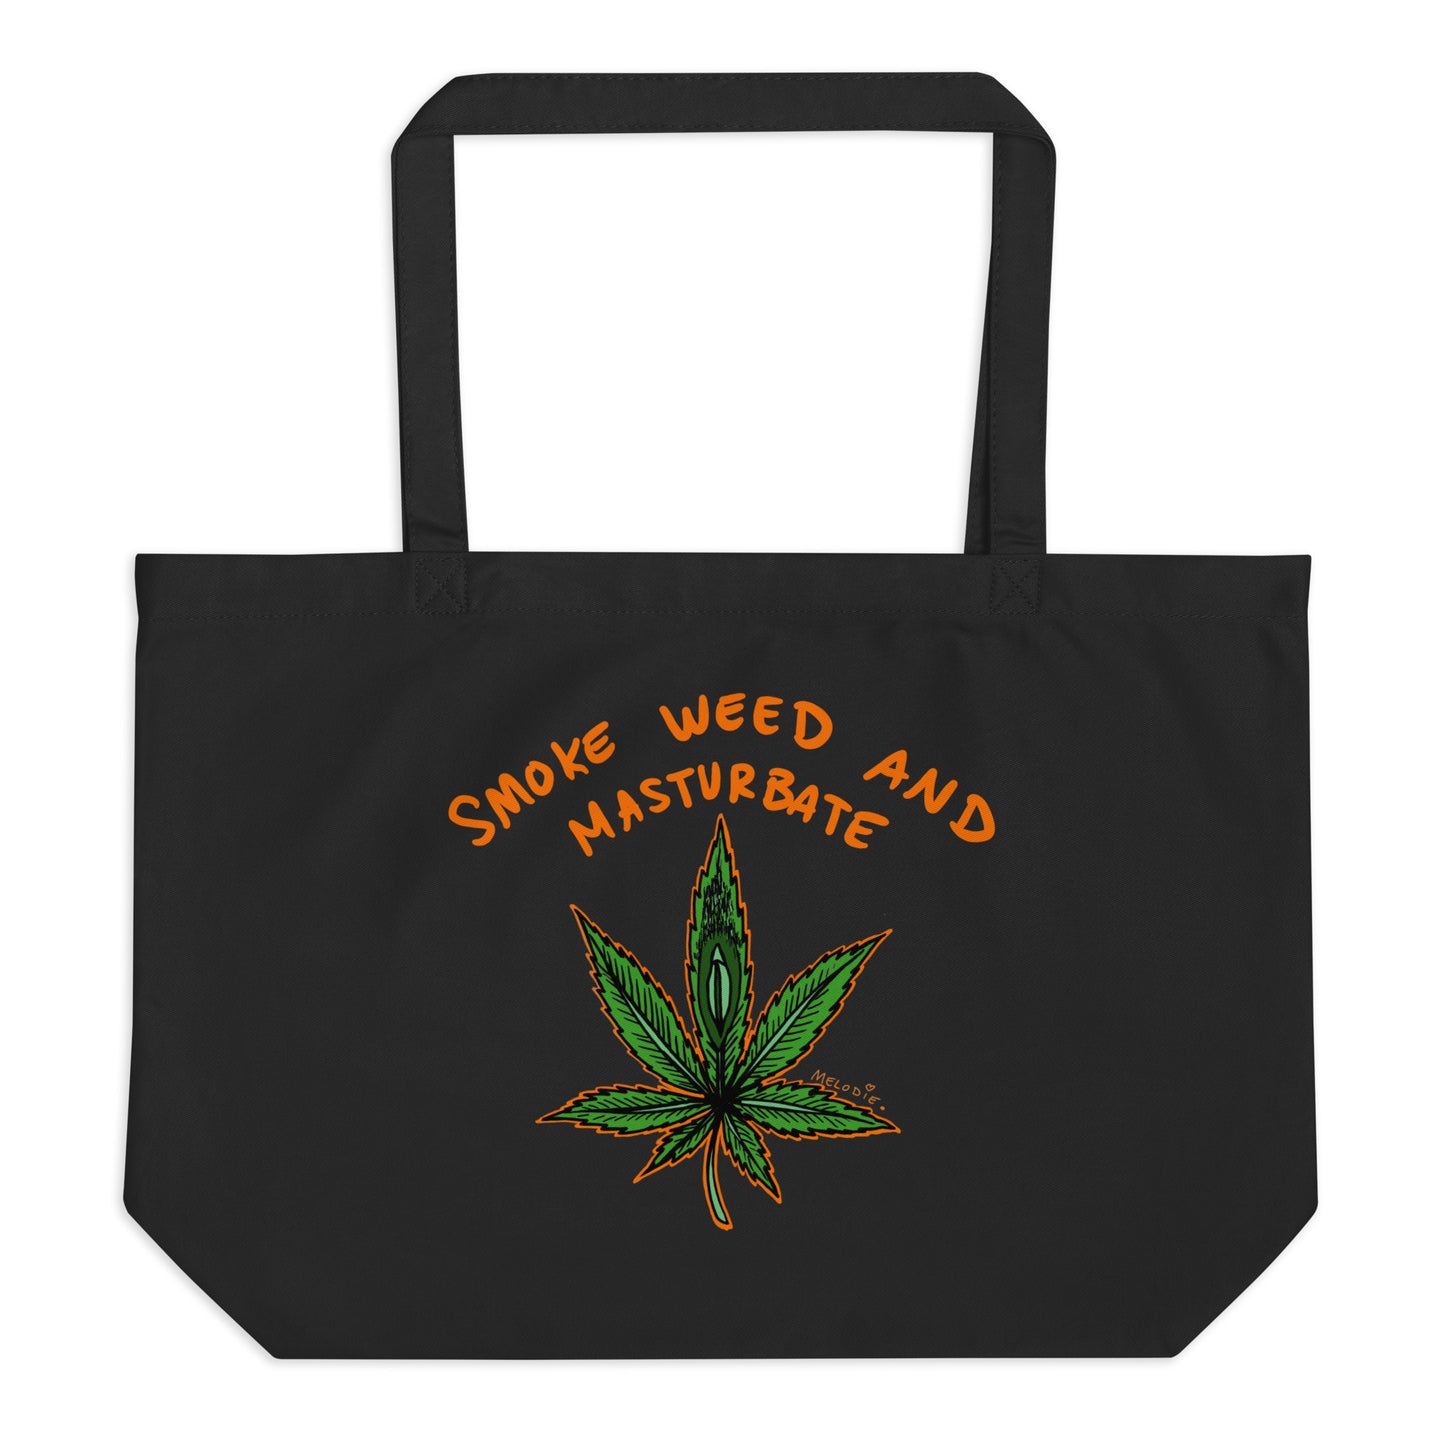 " 2024 Smoke Weed & Masturbate " Large organic tote bag